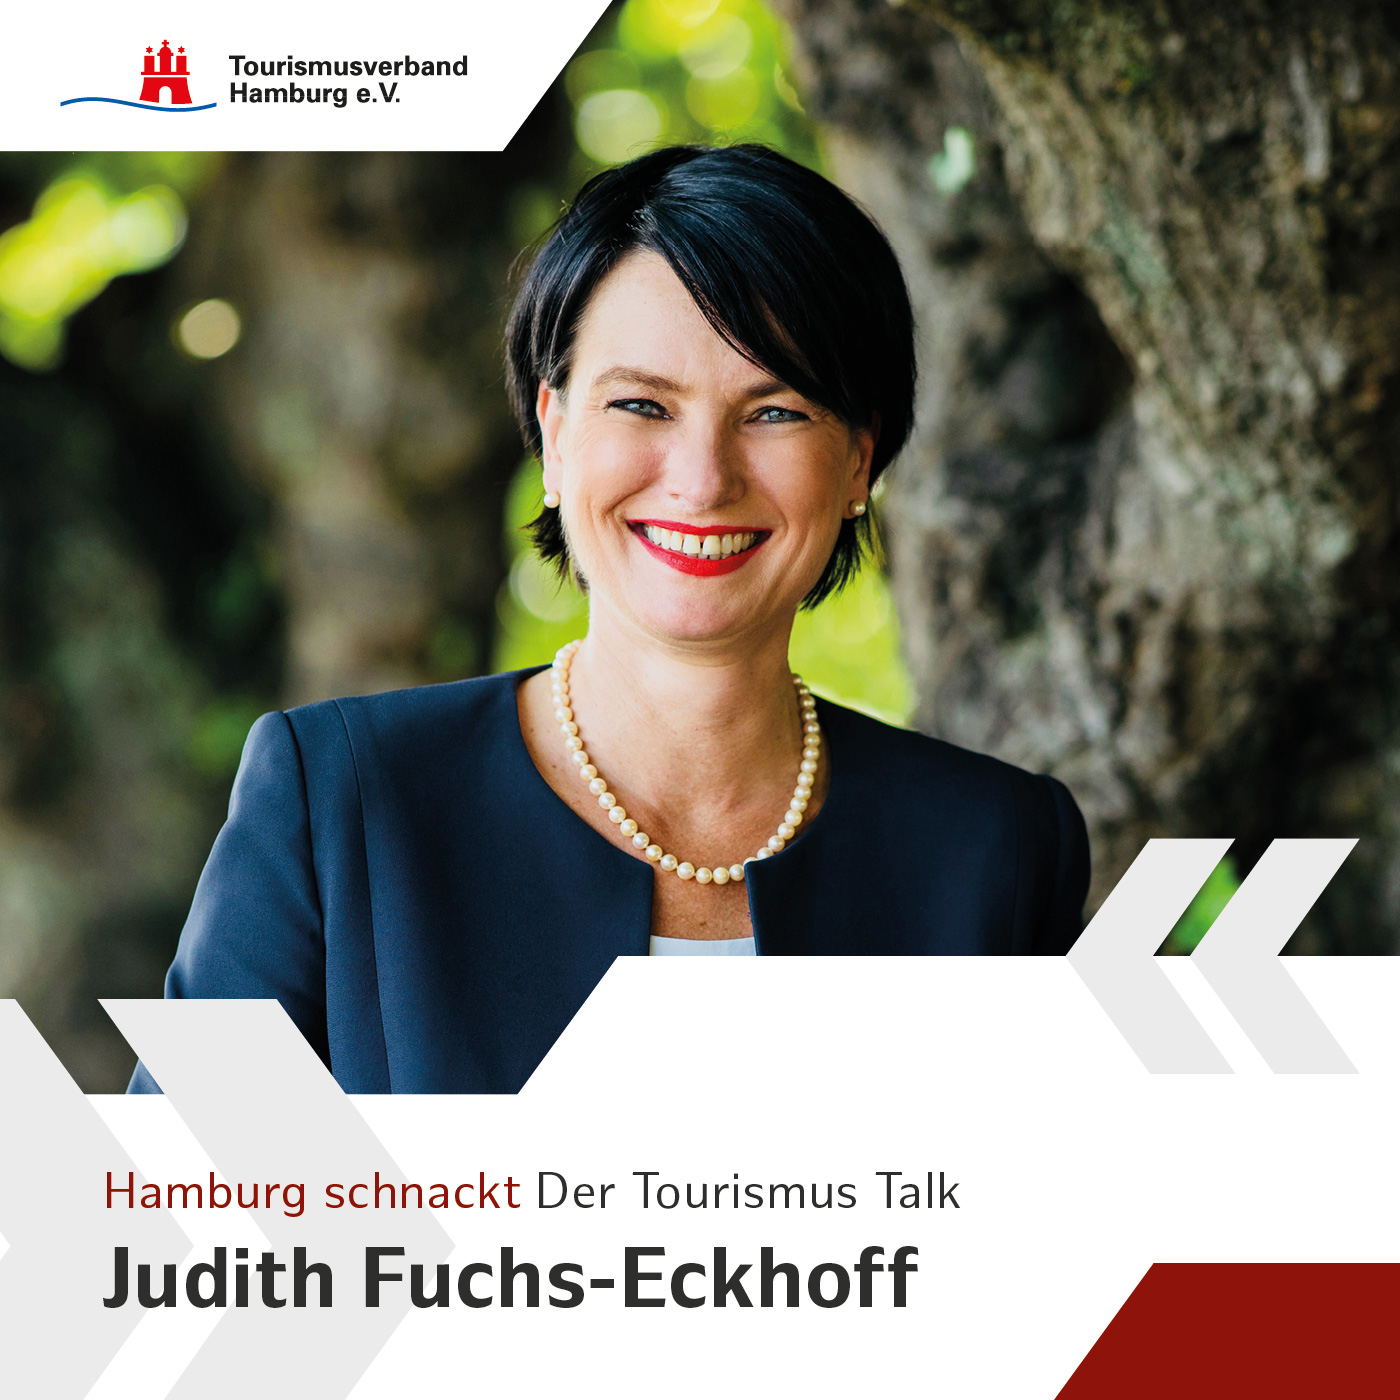 Hamburg schnackt mit Judith Fuchs Eckhoff